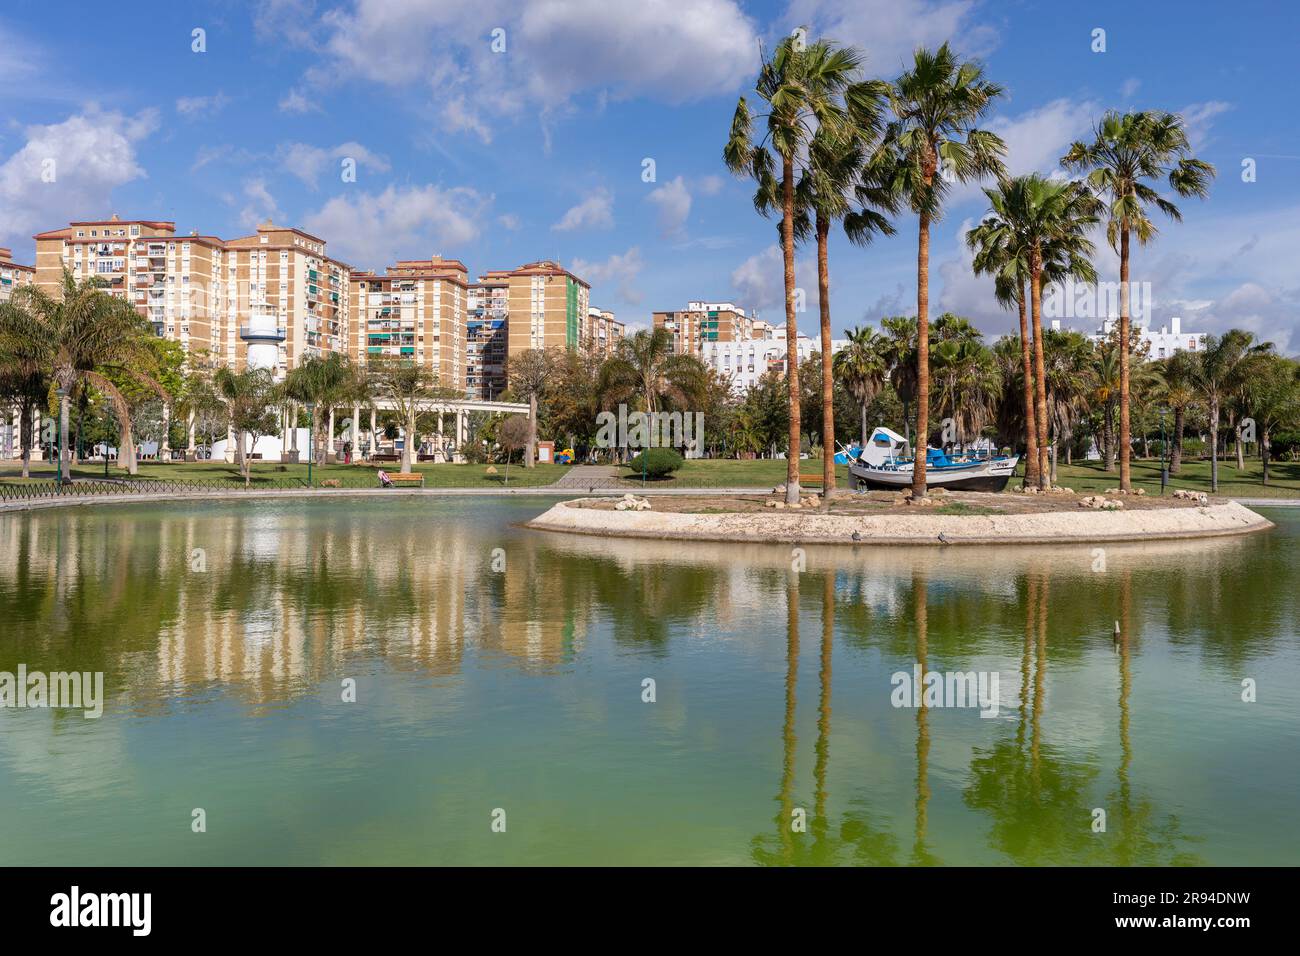 Der künstliche See in Parque de Huelin oder Huelin Park, Malaga, Costa del Sol, Provinz Malaga, Andalusien, Südspanien. Huelin ist ein Barrio oder U-Boot Stockfoto